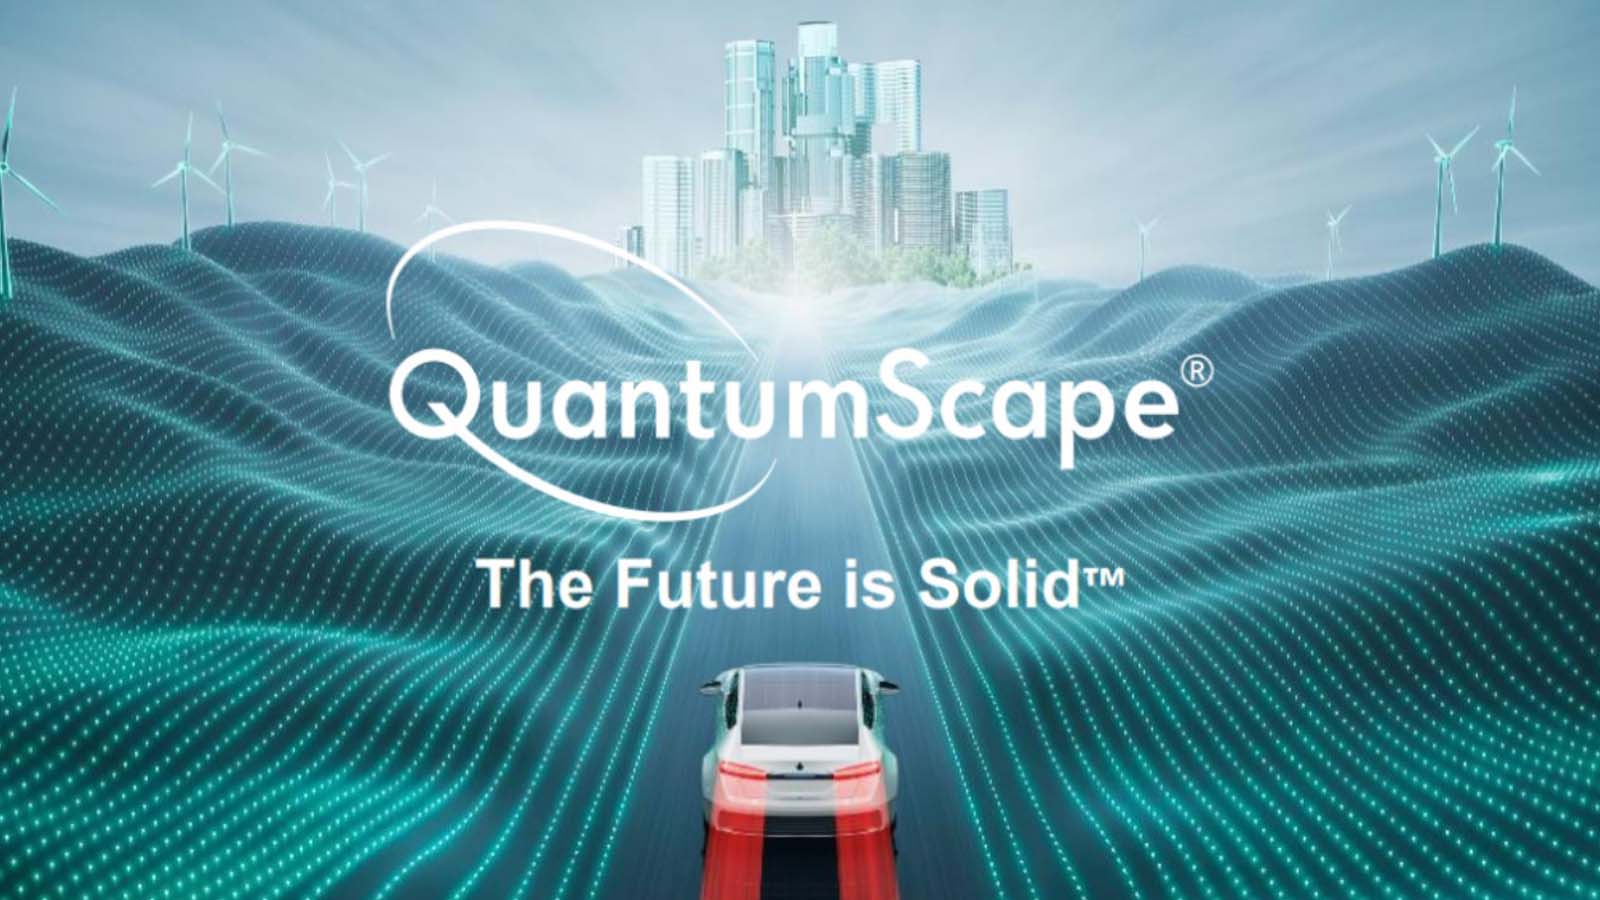 Scopri come la tecnologia a stato solido delle batterie QuantumScape sta accelerando i tempi di ricarica